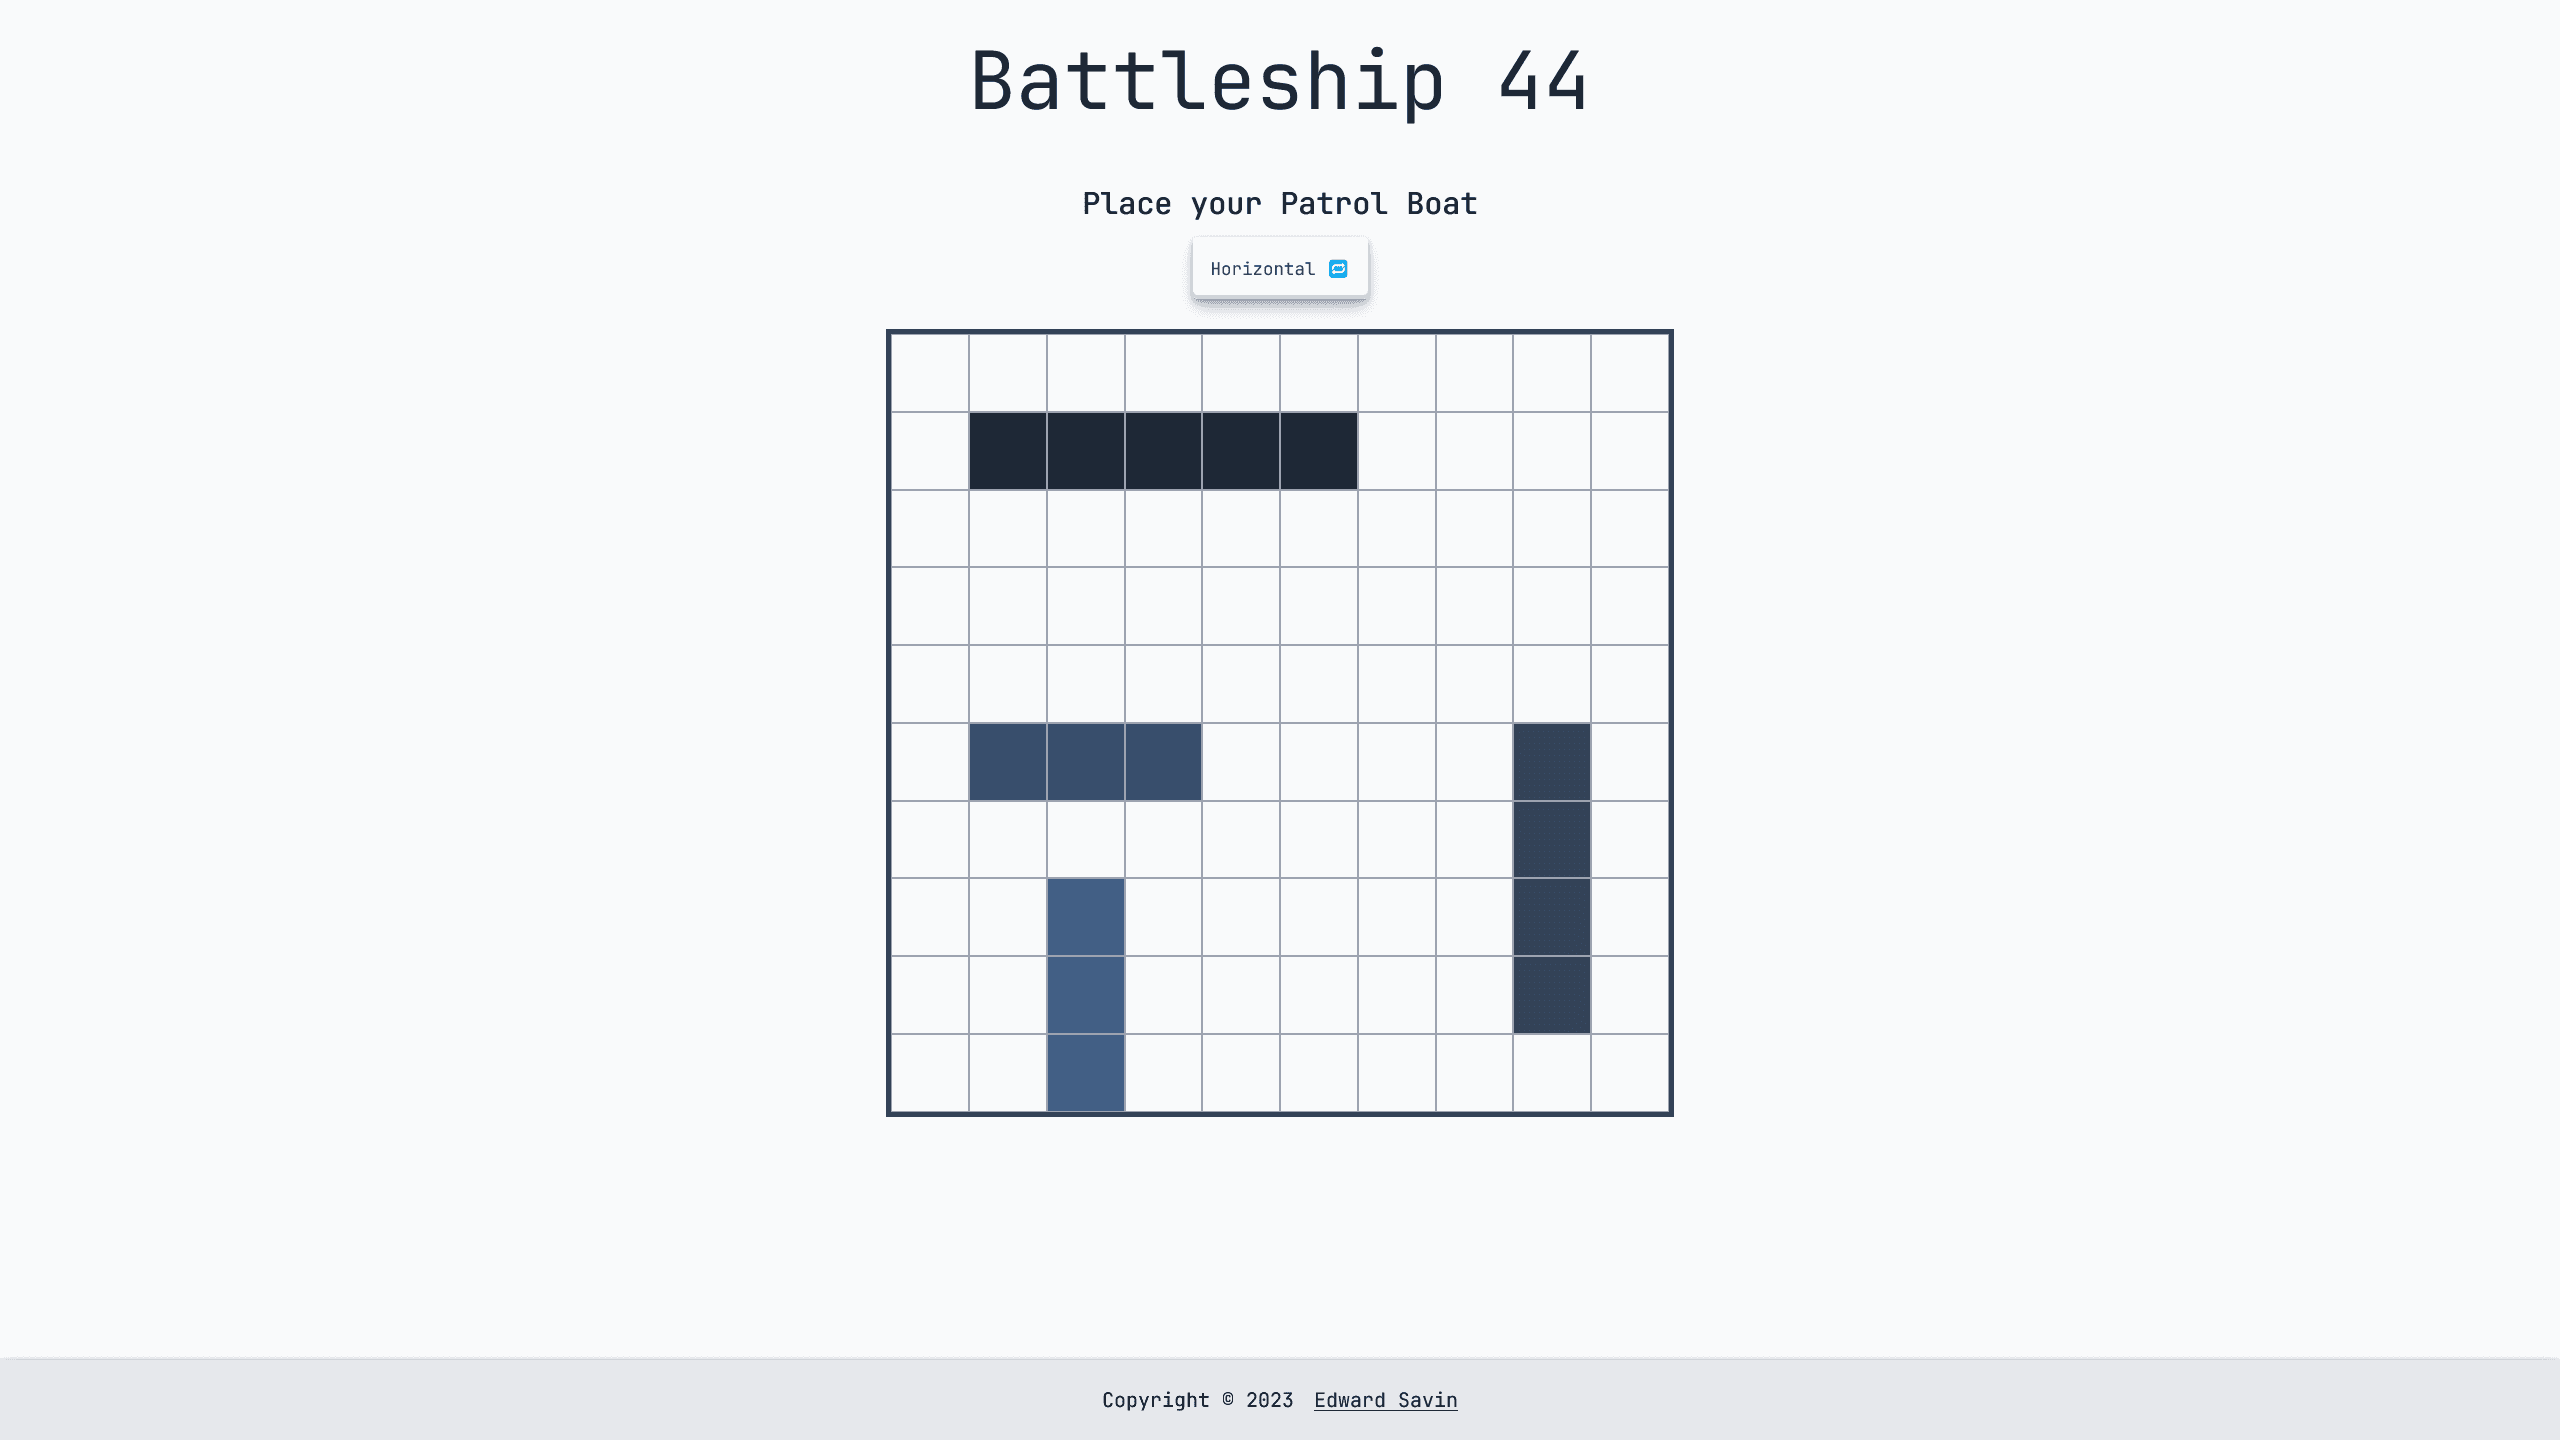 Battleship 44 Design